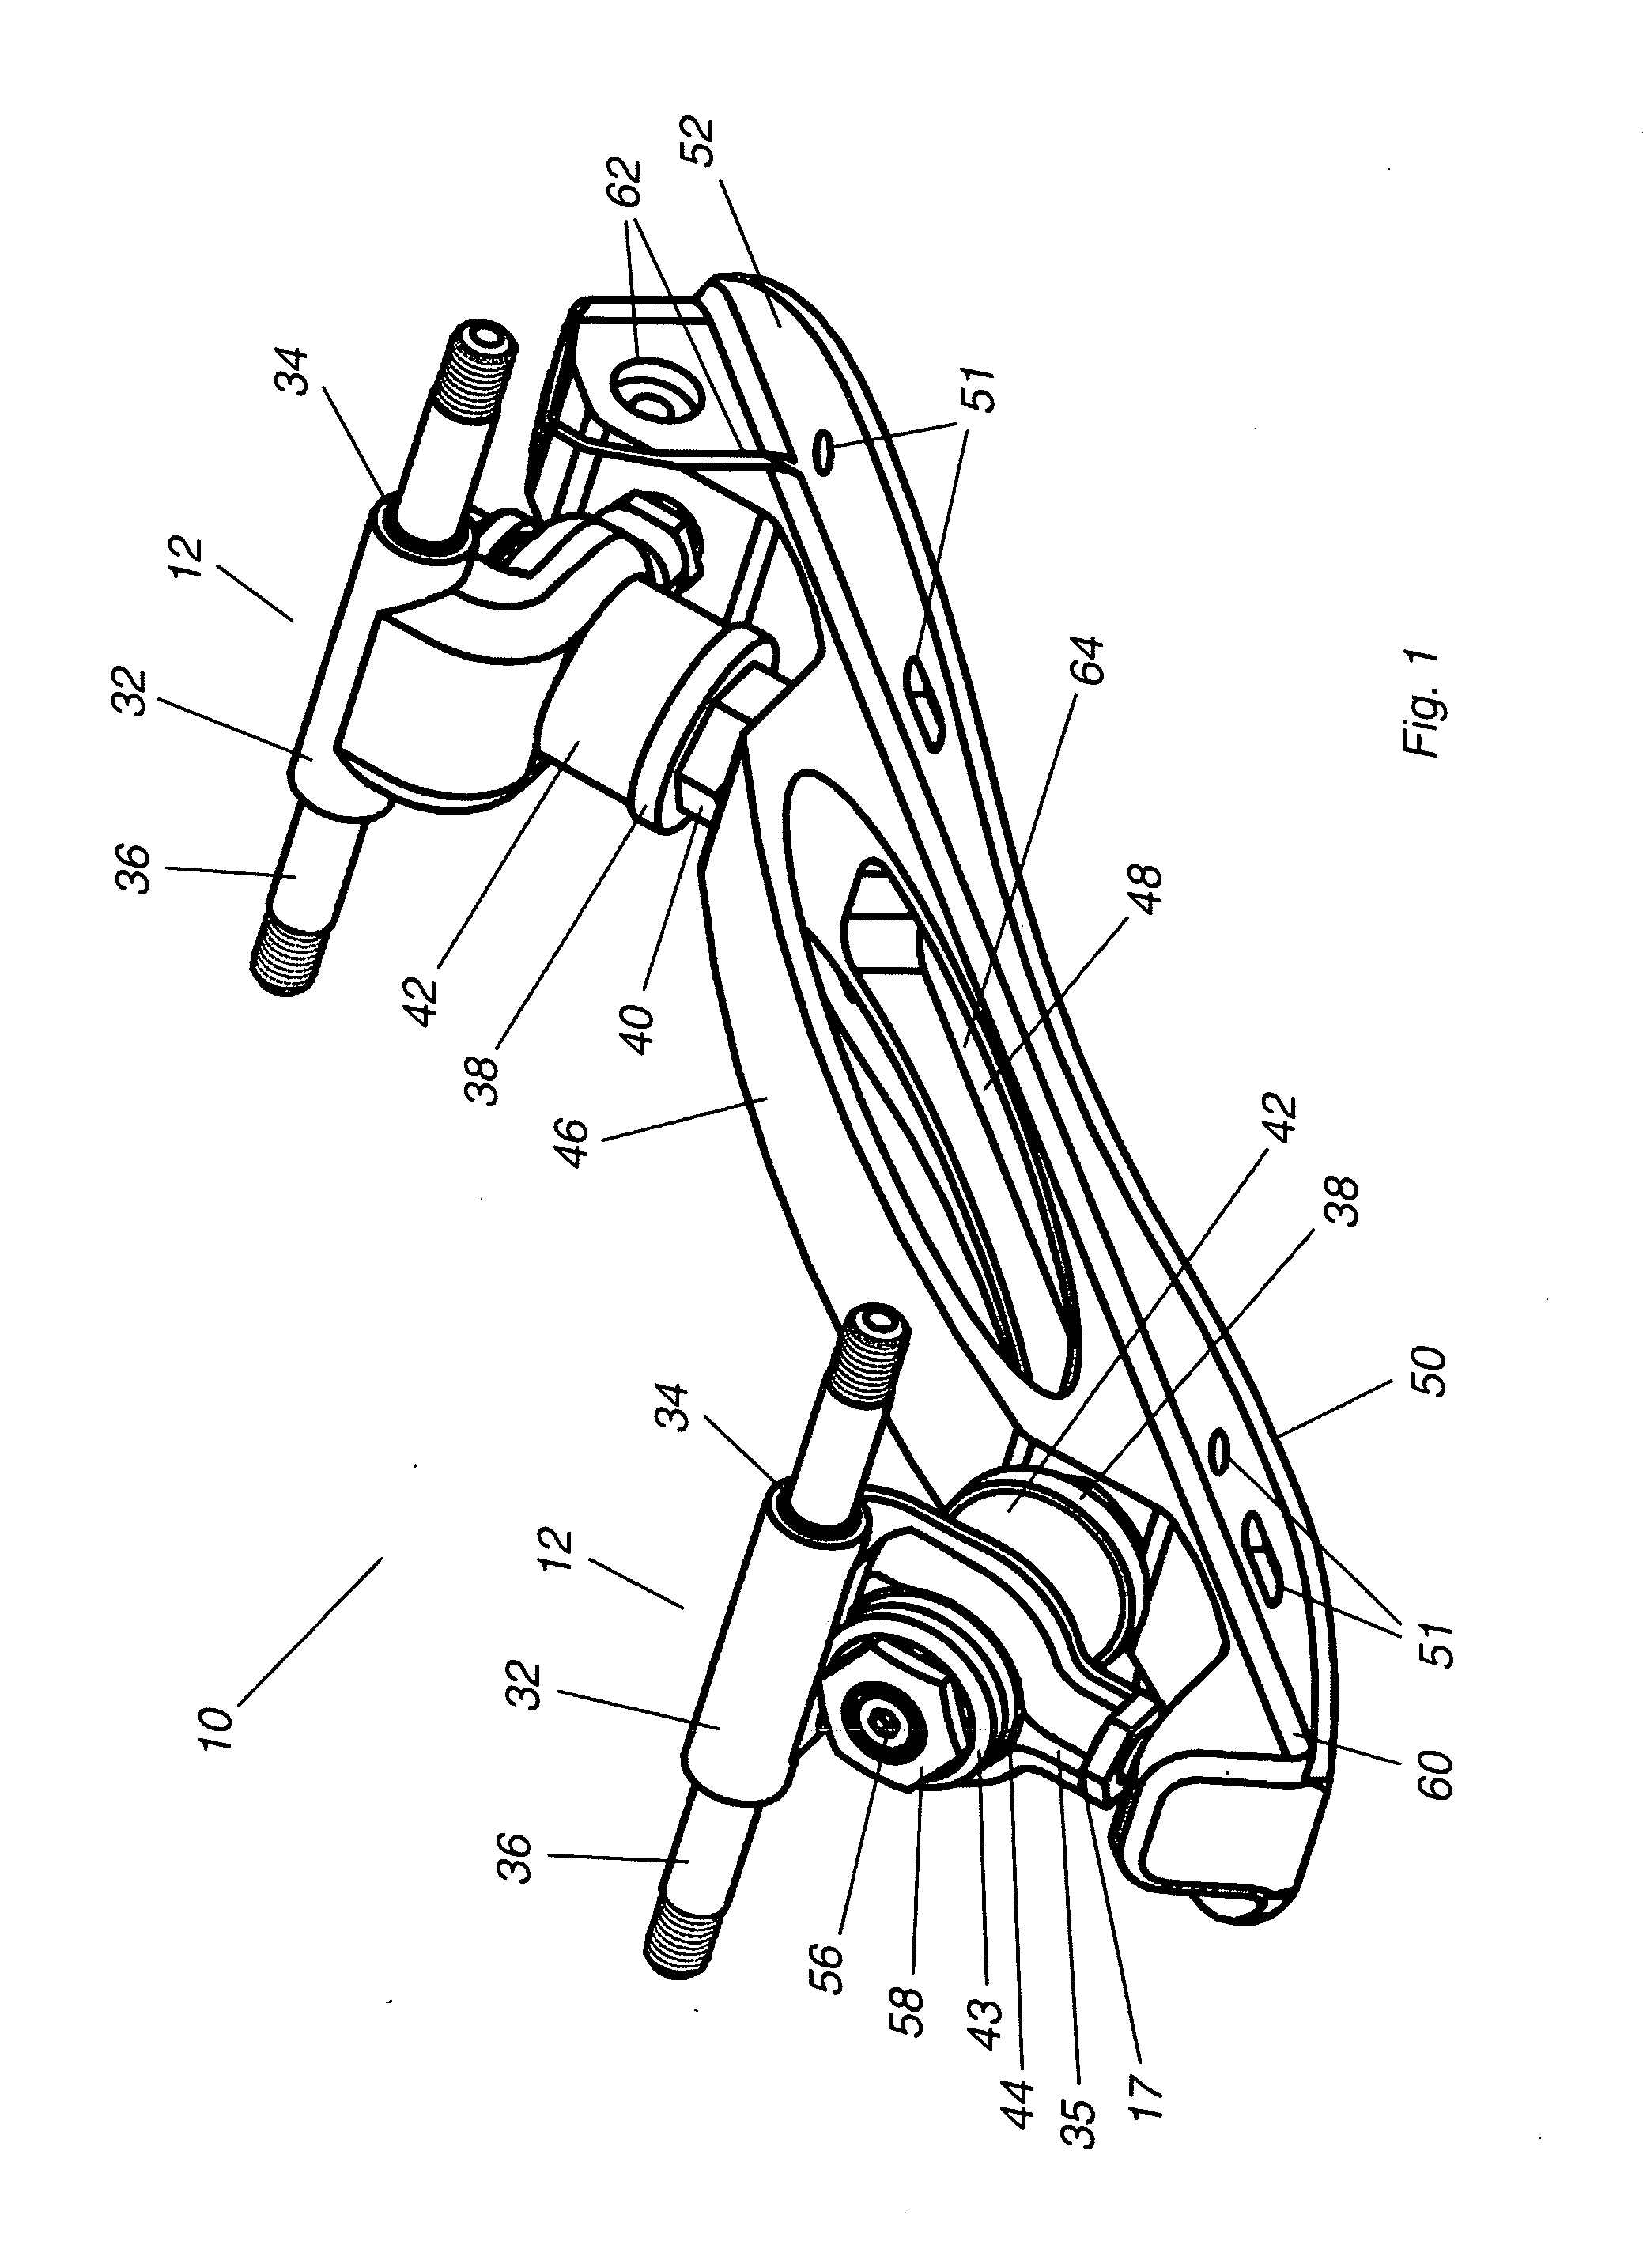 Roller Skate steering and suspension mechanism